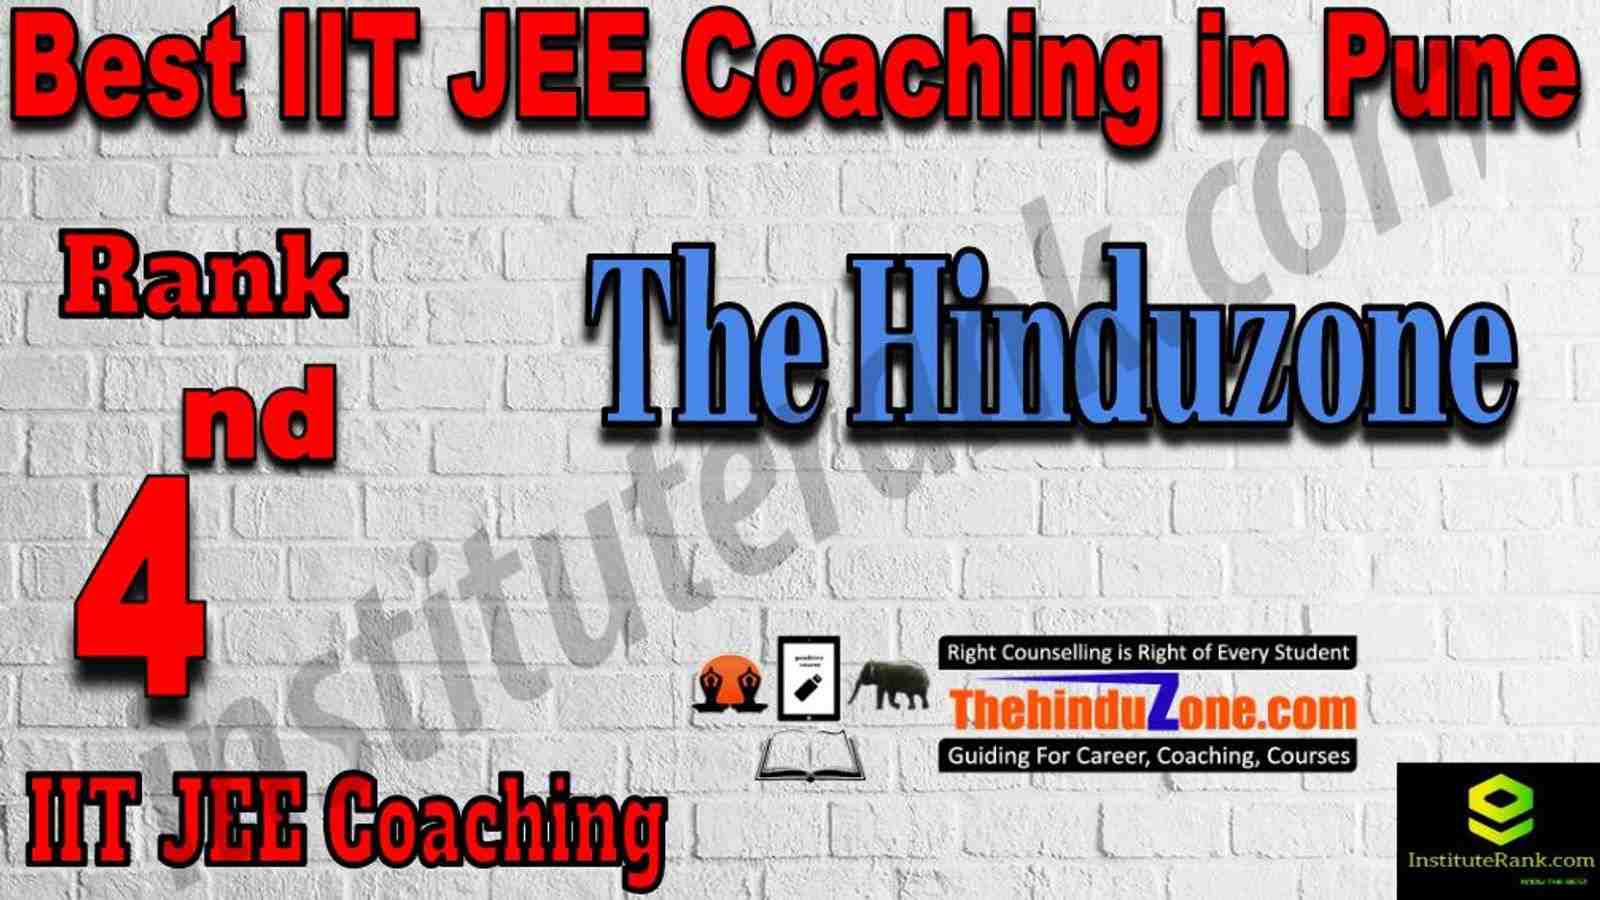 4th Best IIT JEE Coaching in Pune